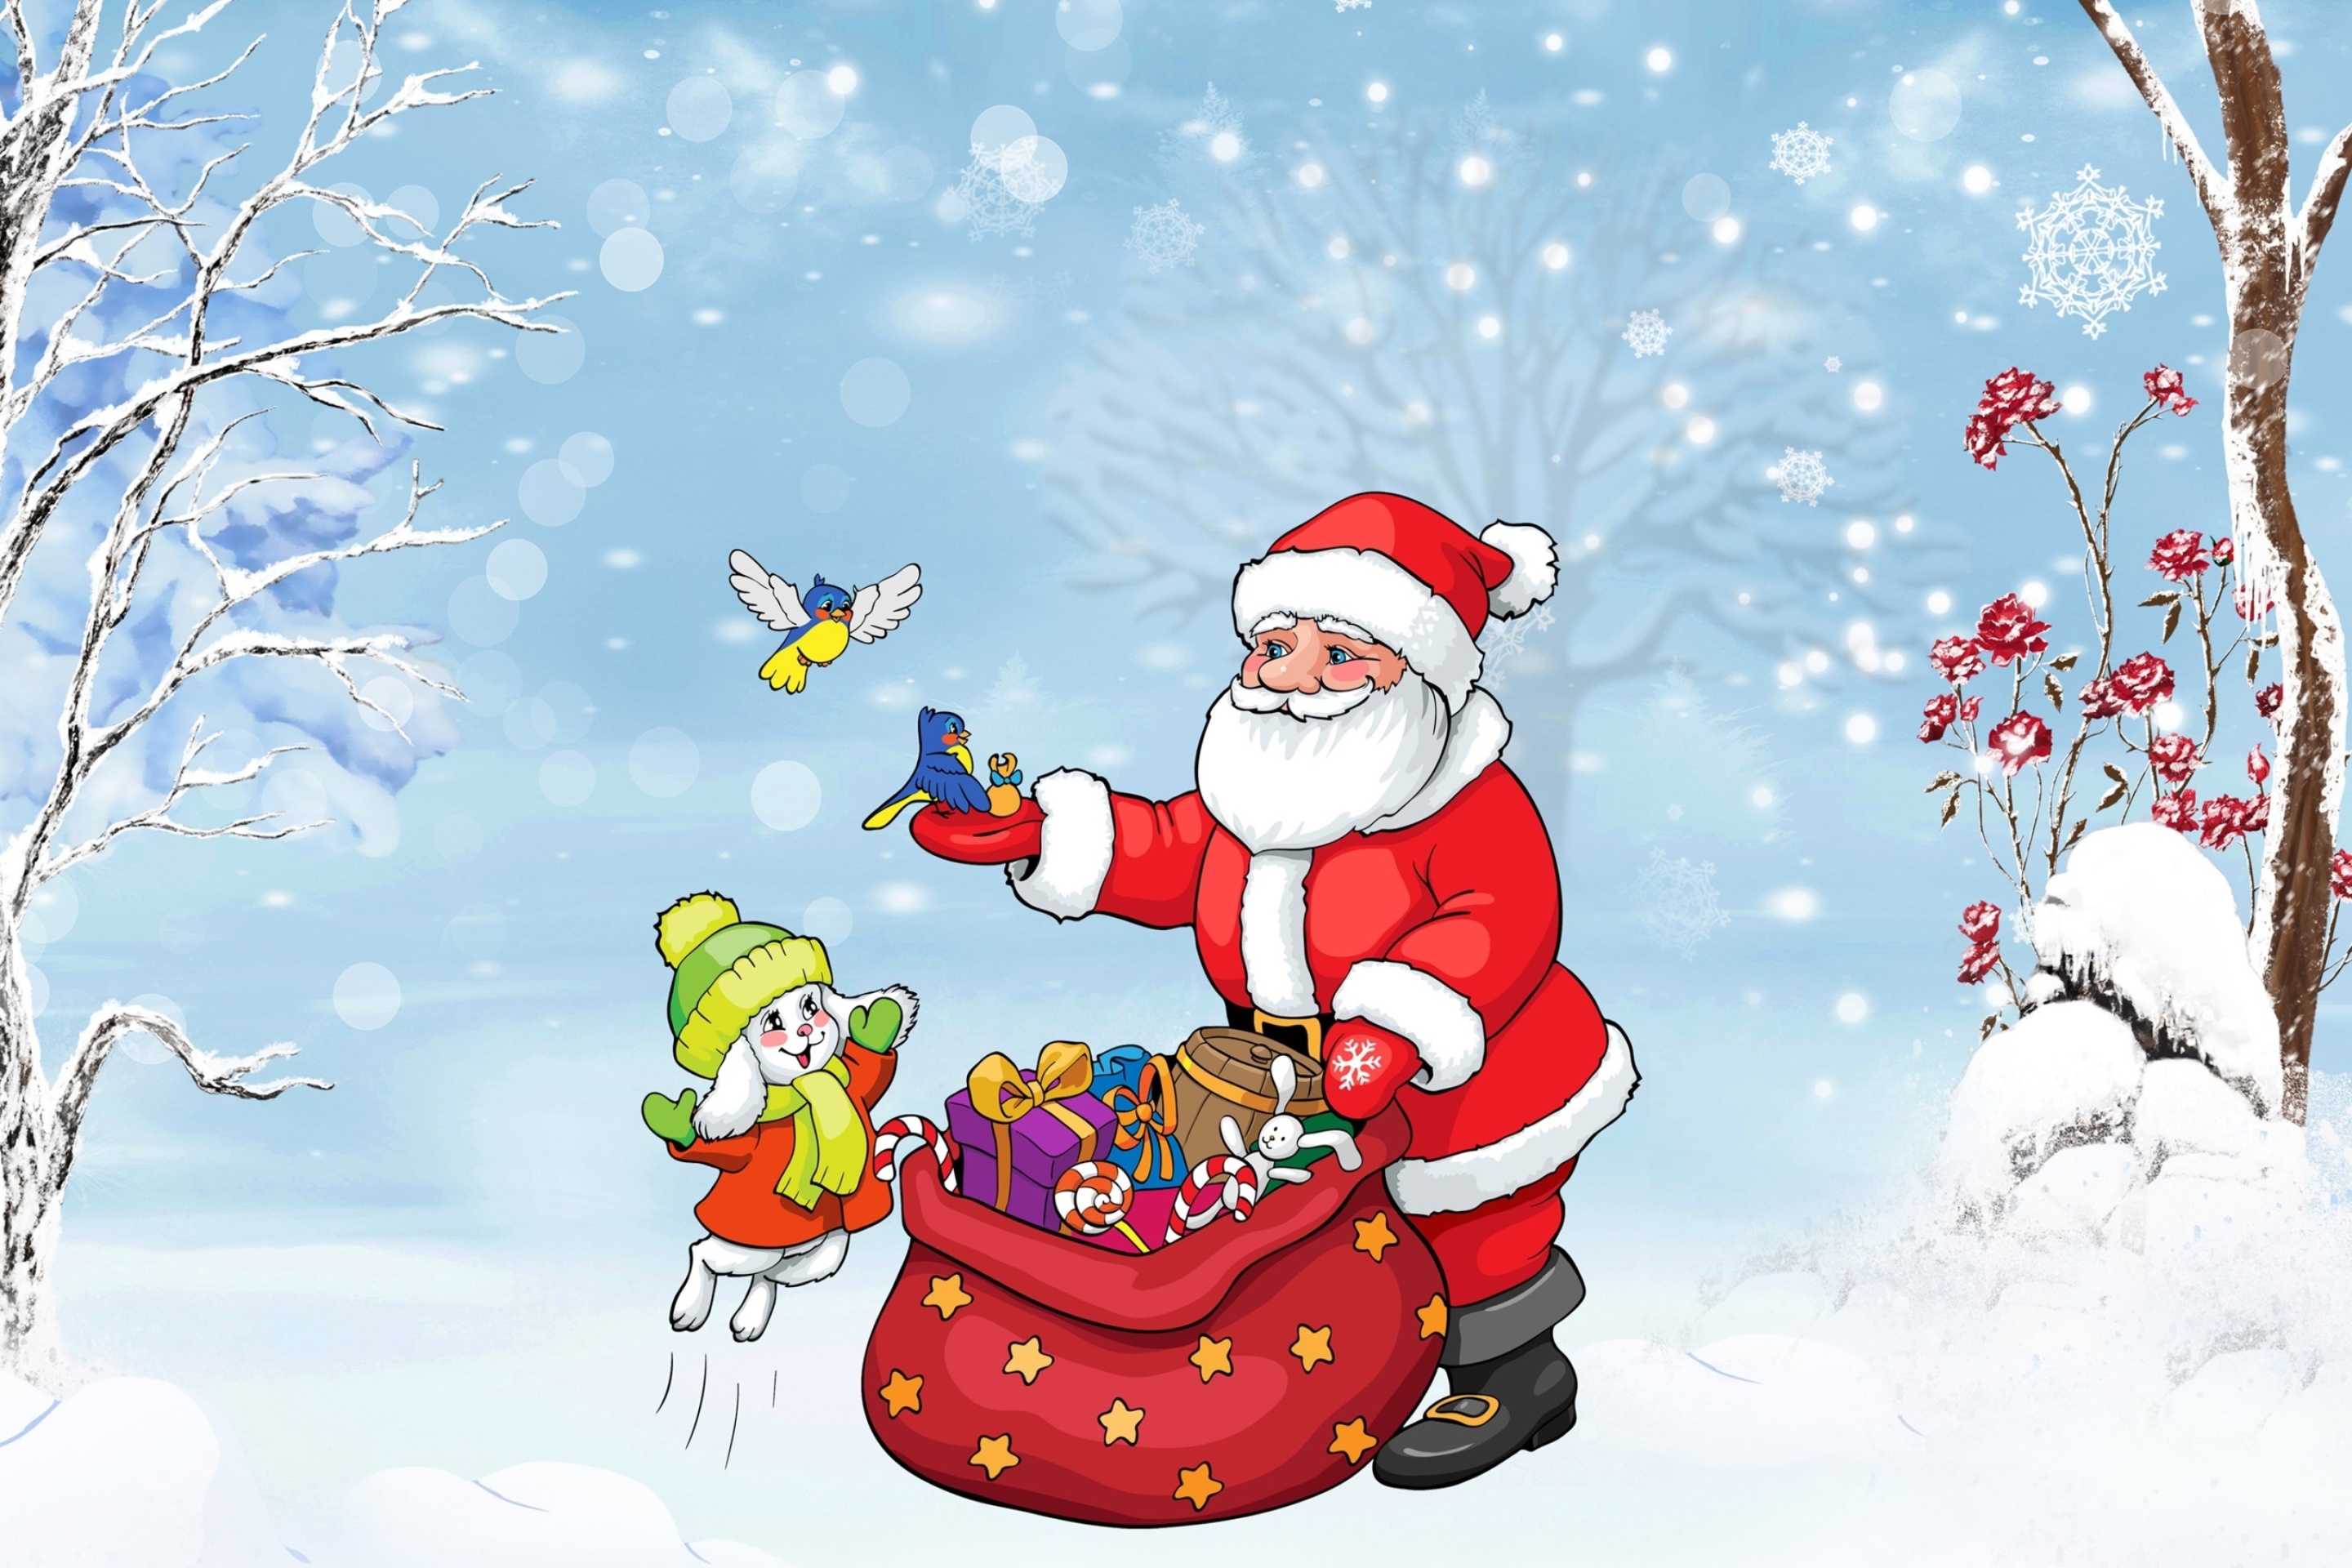 Обои Santa Claus And The Christmas Adventure 2880x1920